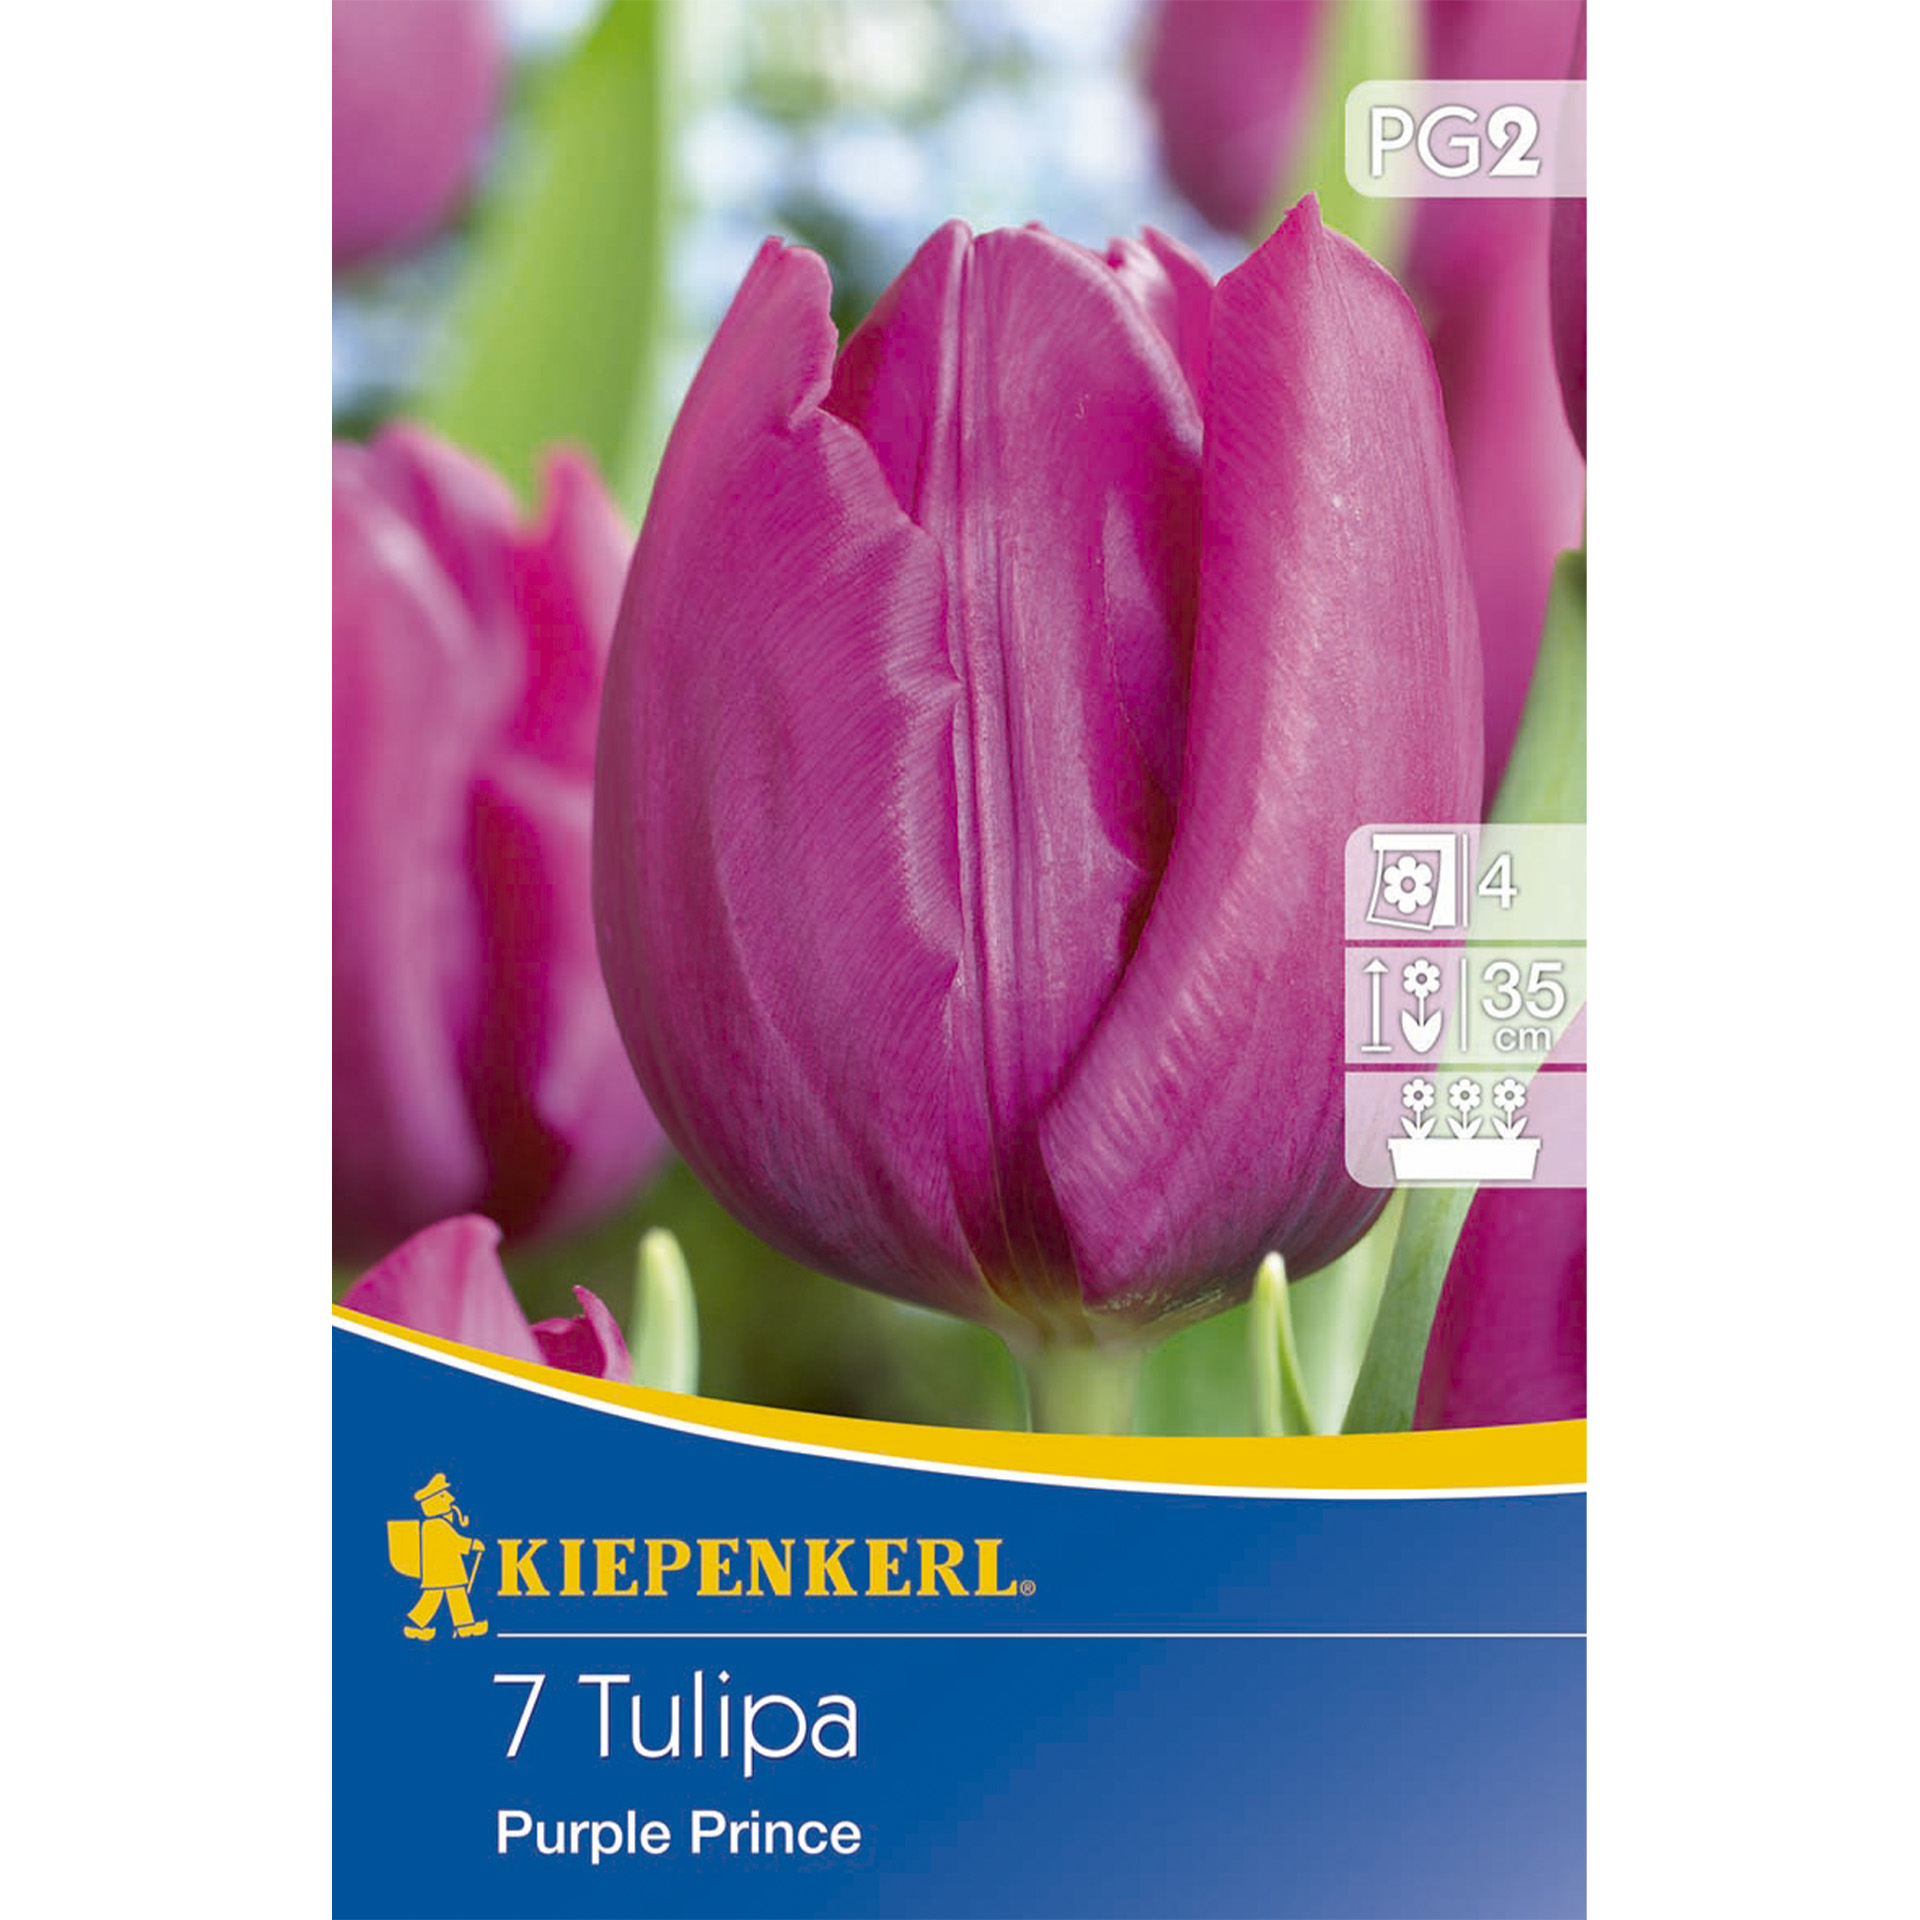 Tulpen mit strahlend purpurfarben en Blütenblättern